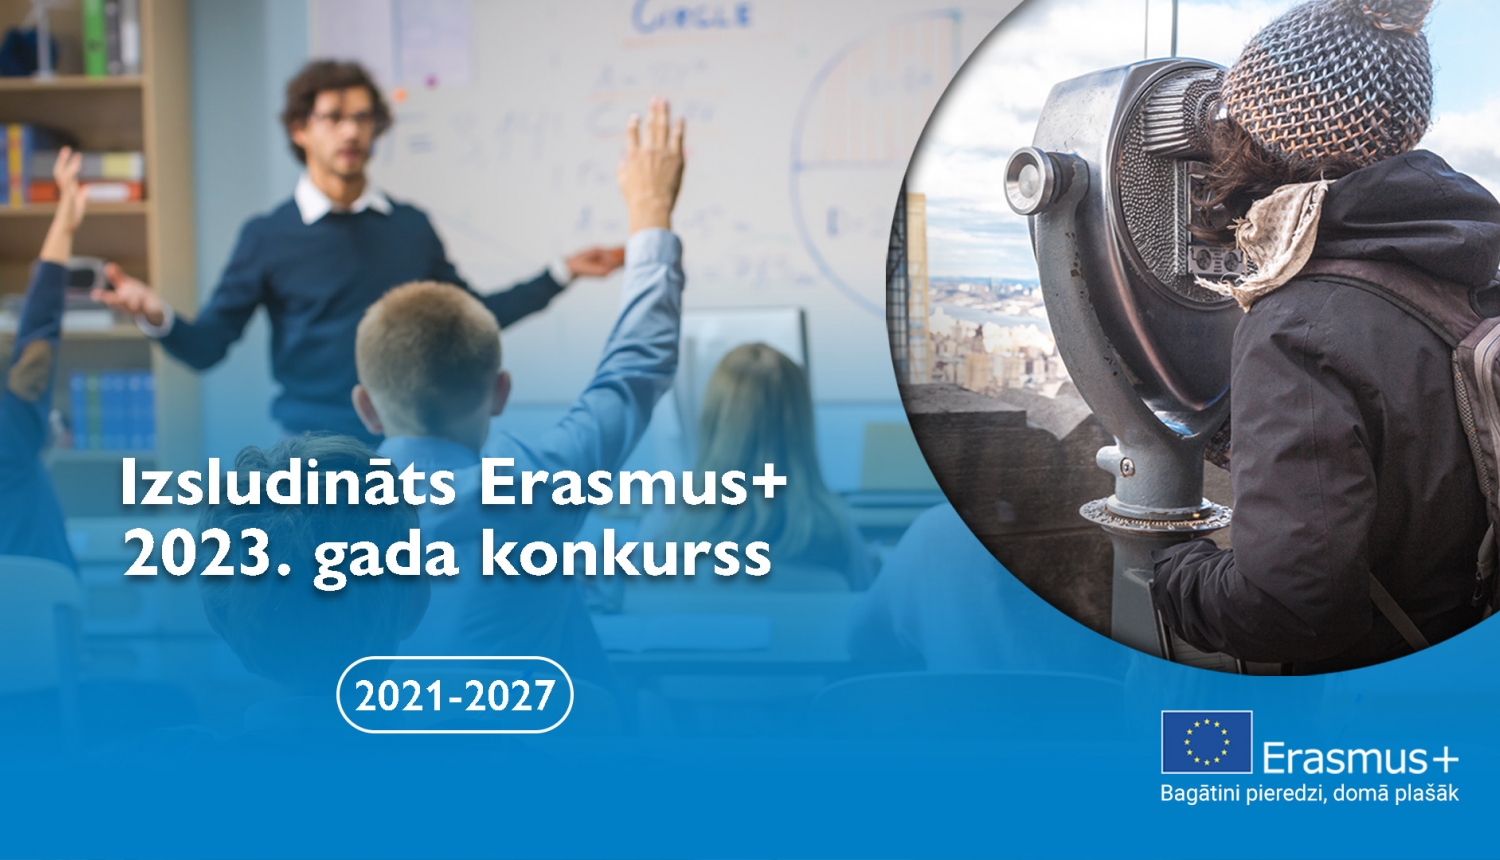 Erasmus+ 2023. gada konkursa izsludināšanas vizuālis